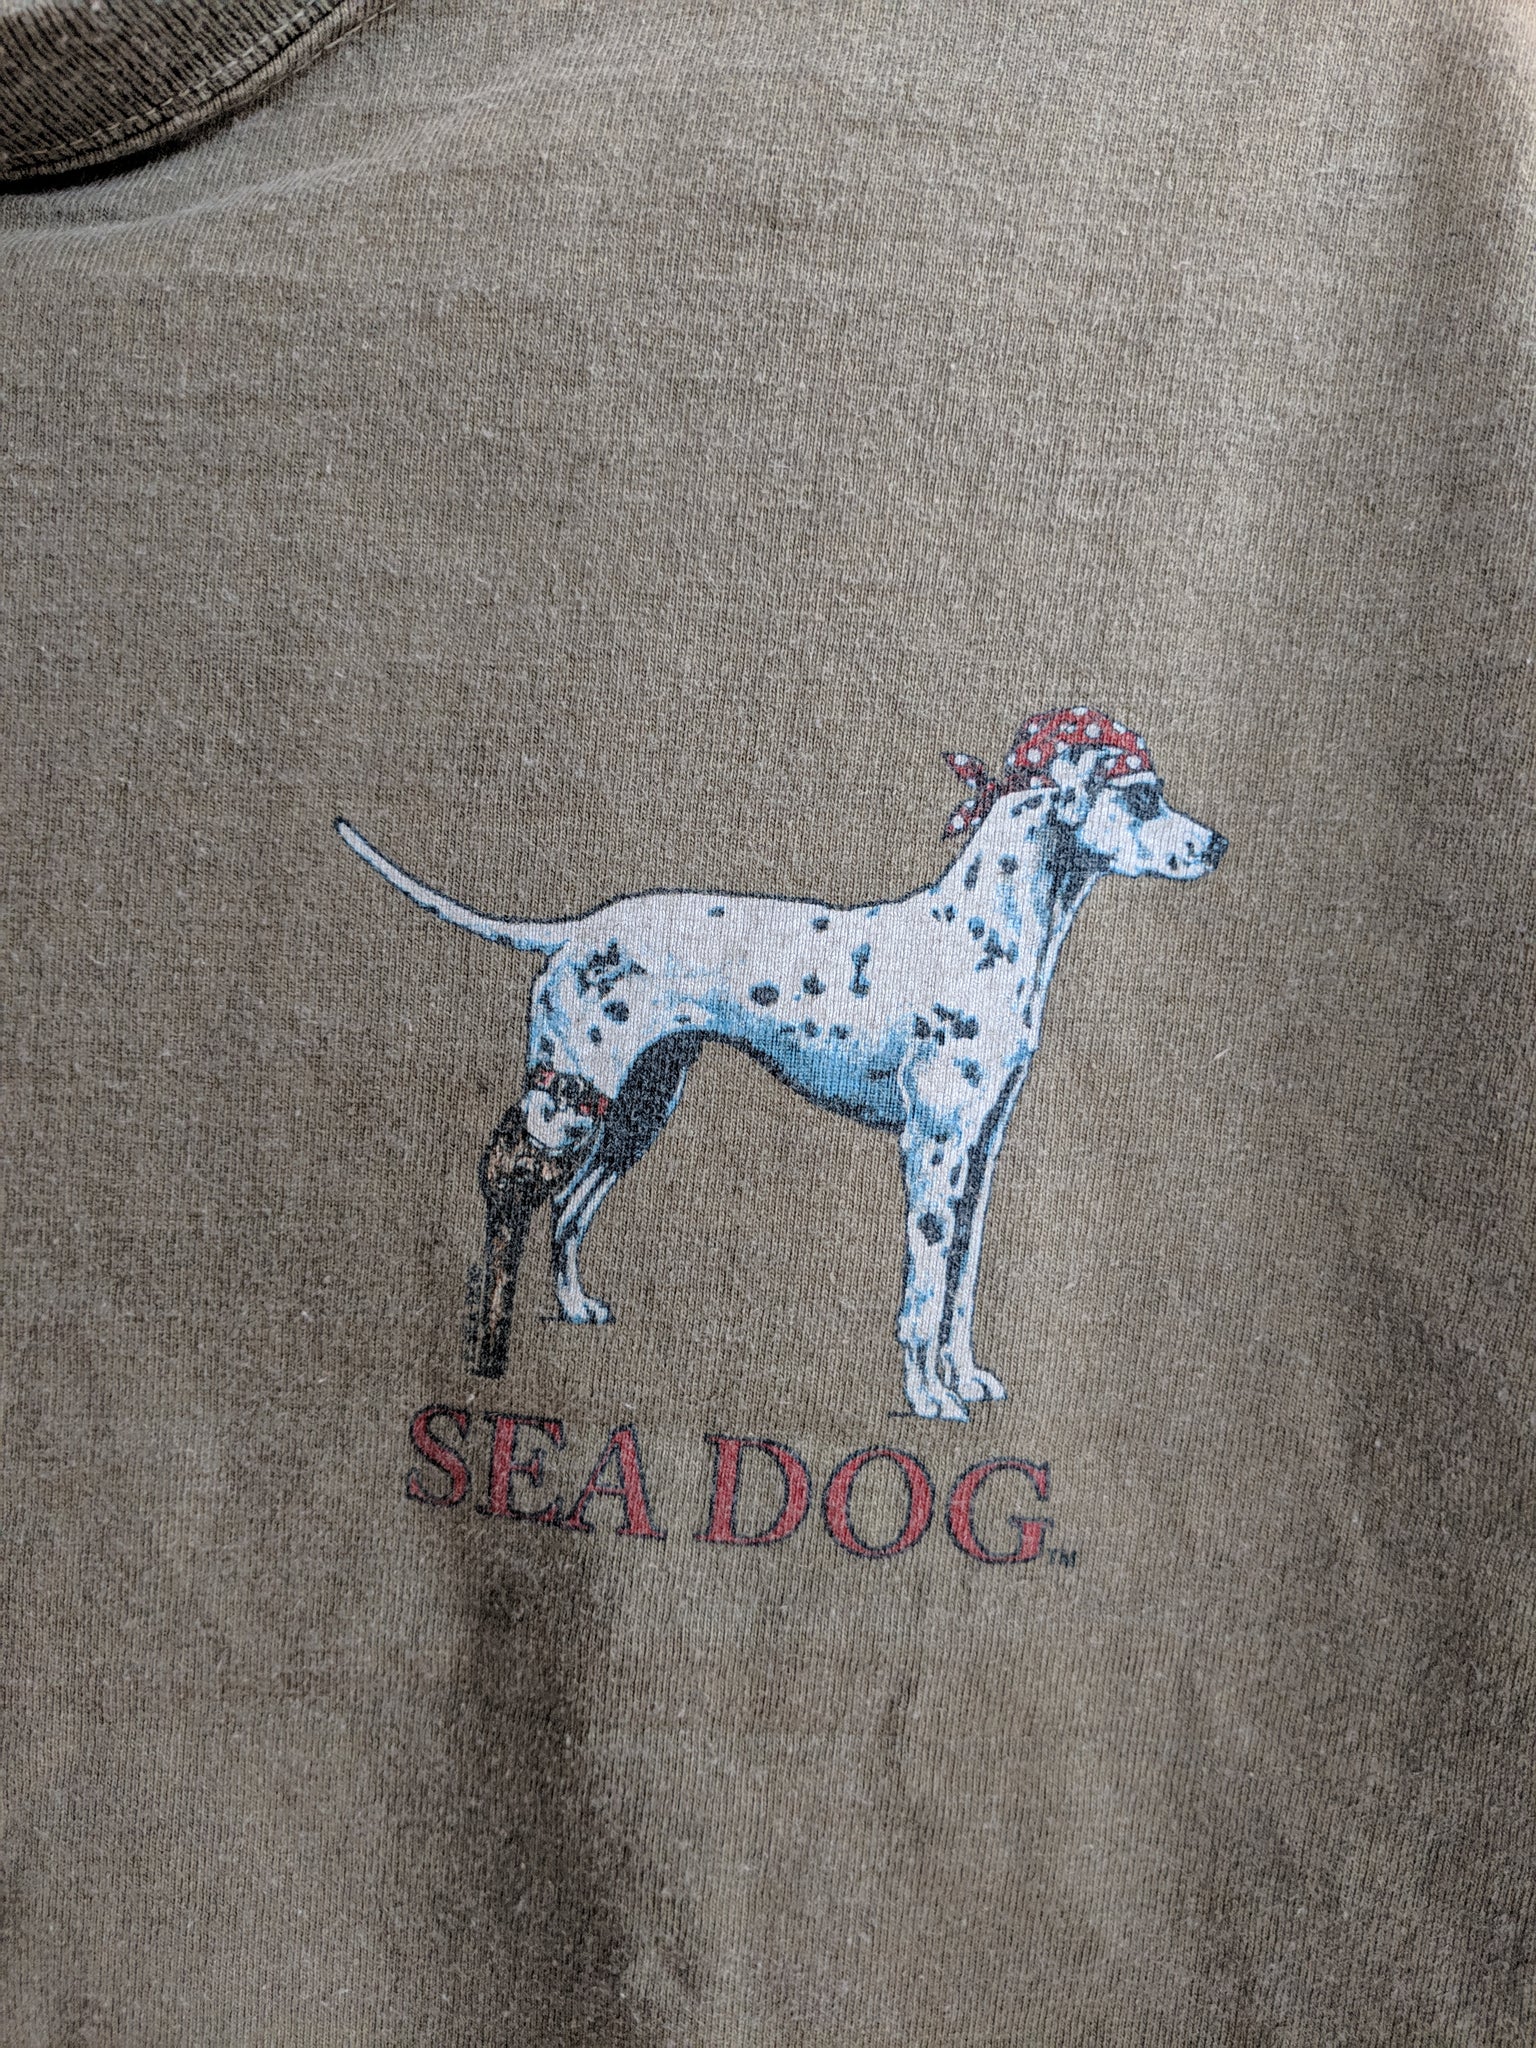 sea dog the dog of the sea